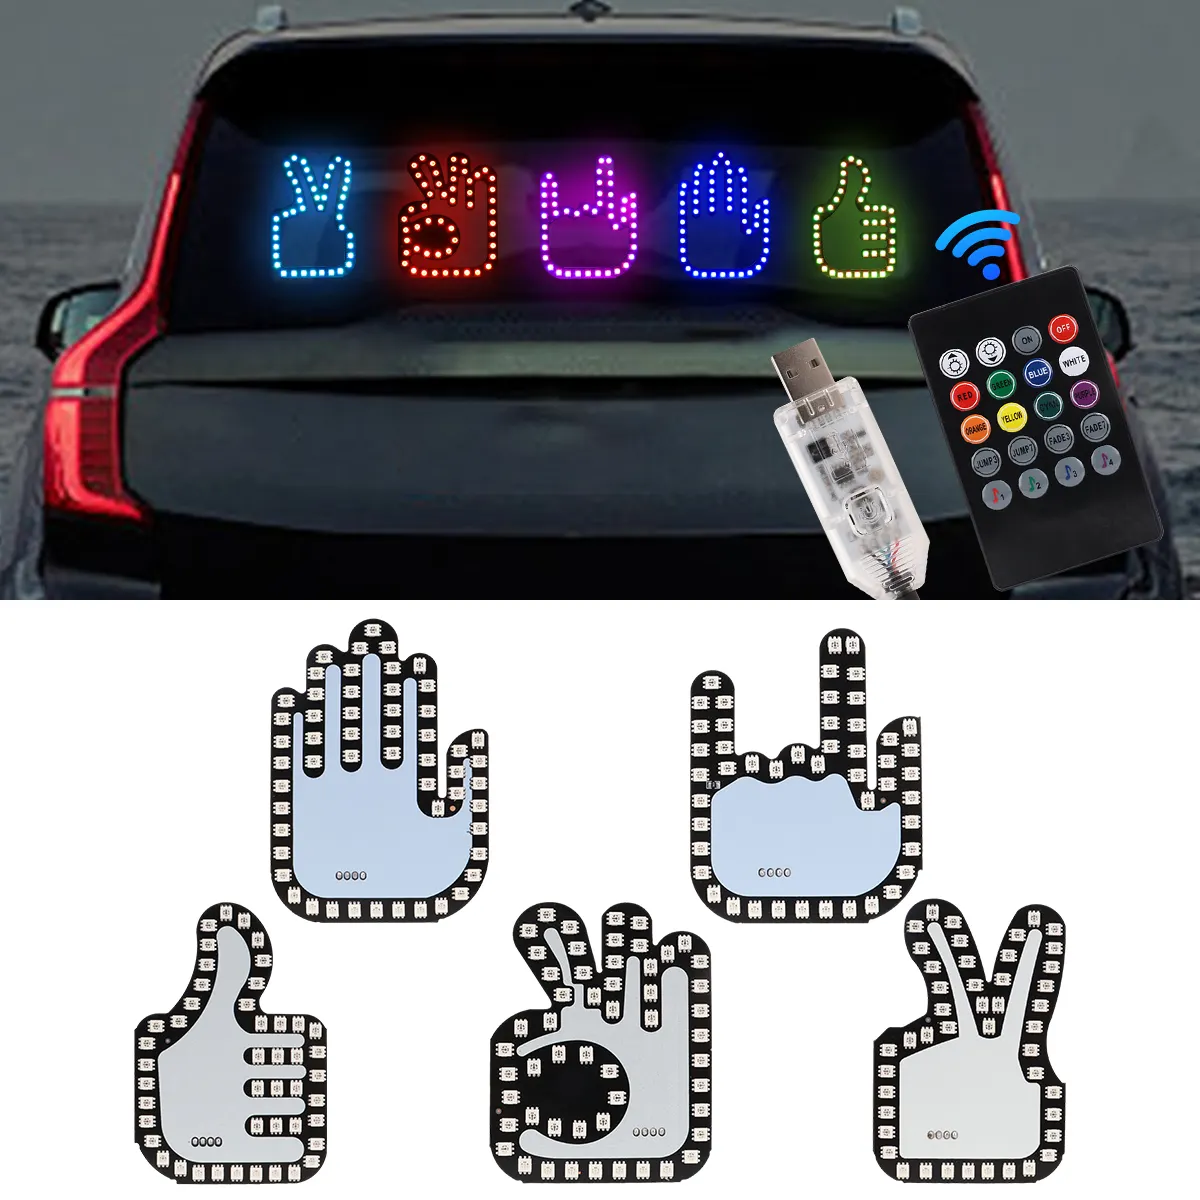 Xe ngón tay ánh sáng cảnh báo đèn tự động 12V nhấp nháy biến cử chỉ đèn LED cho xe nội thất cửa sổ ánh sáng lần lượt tín hiệu DRL